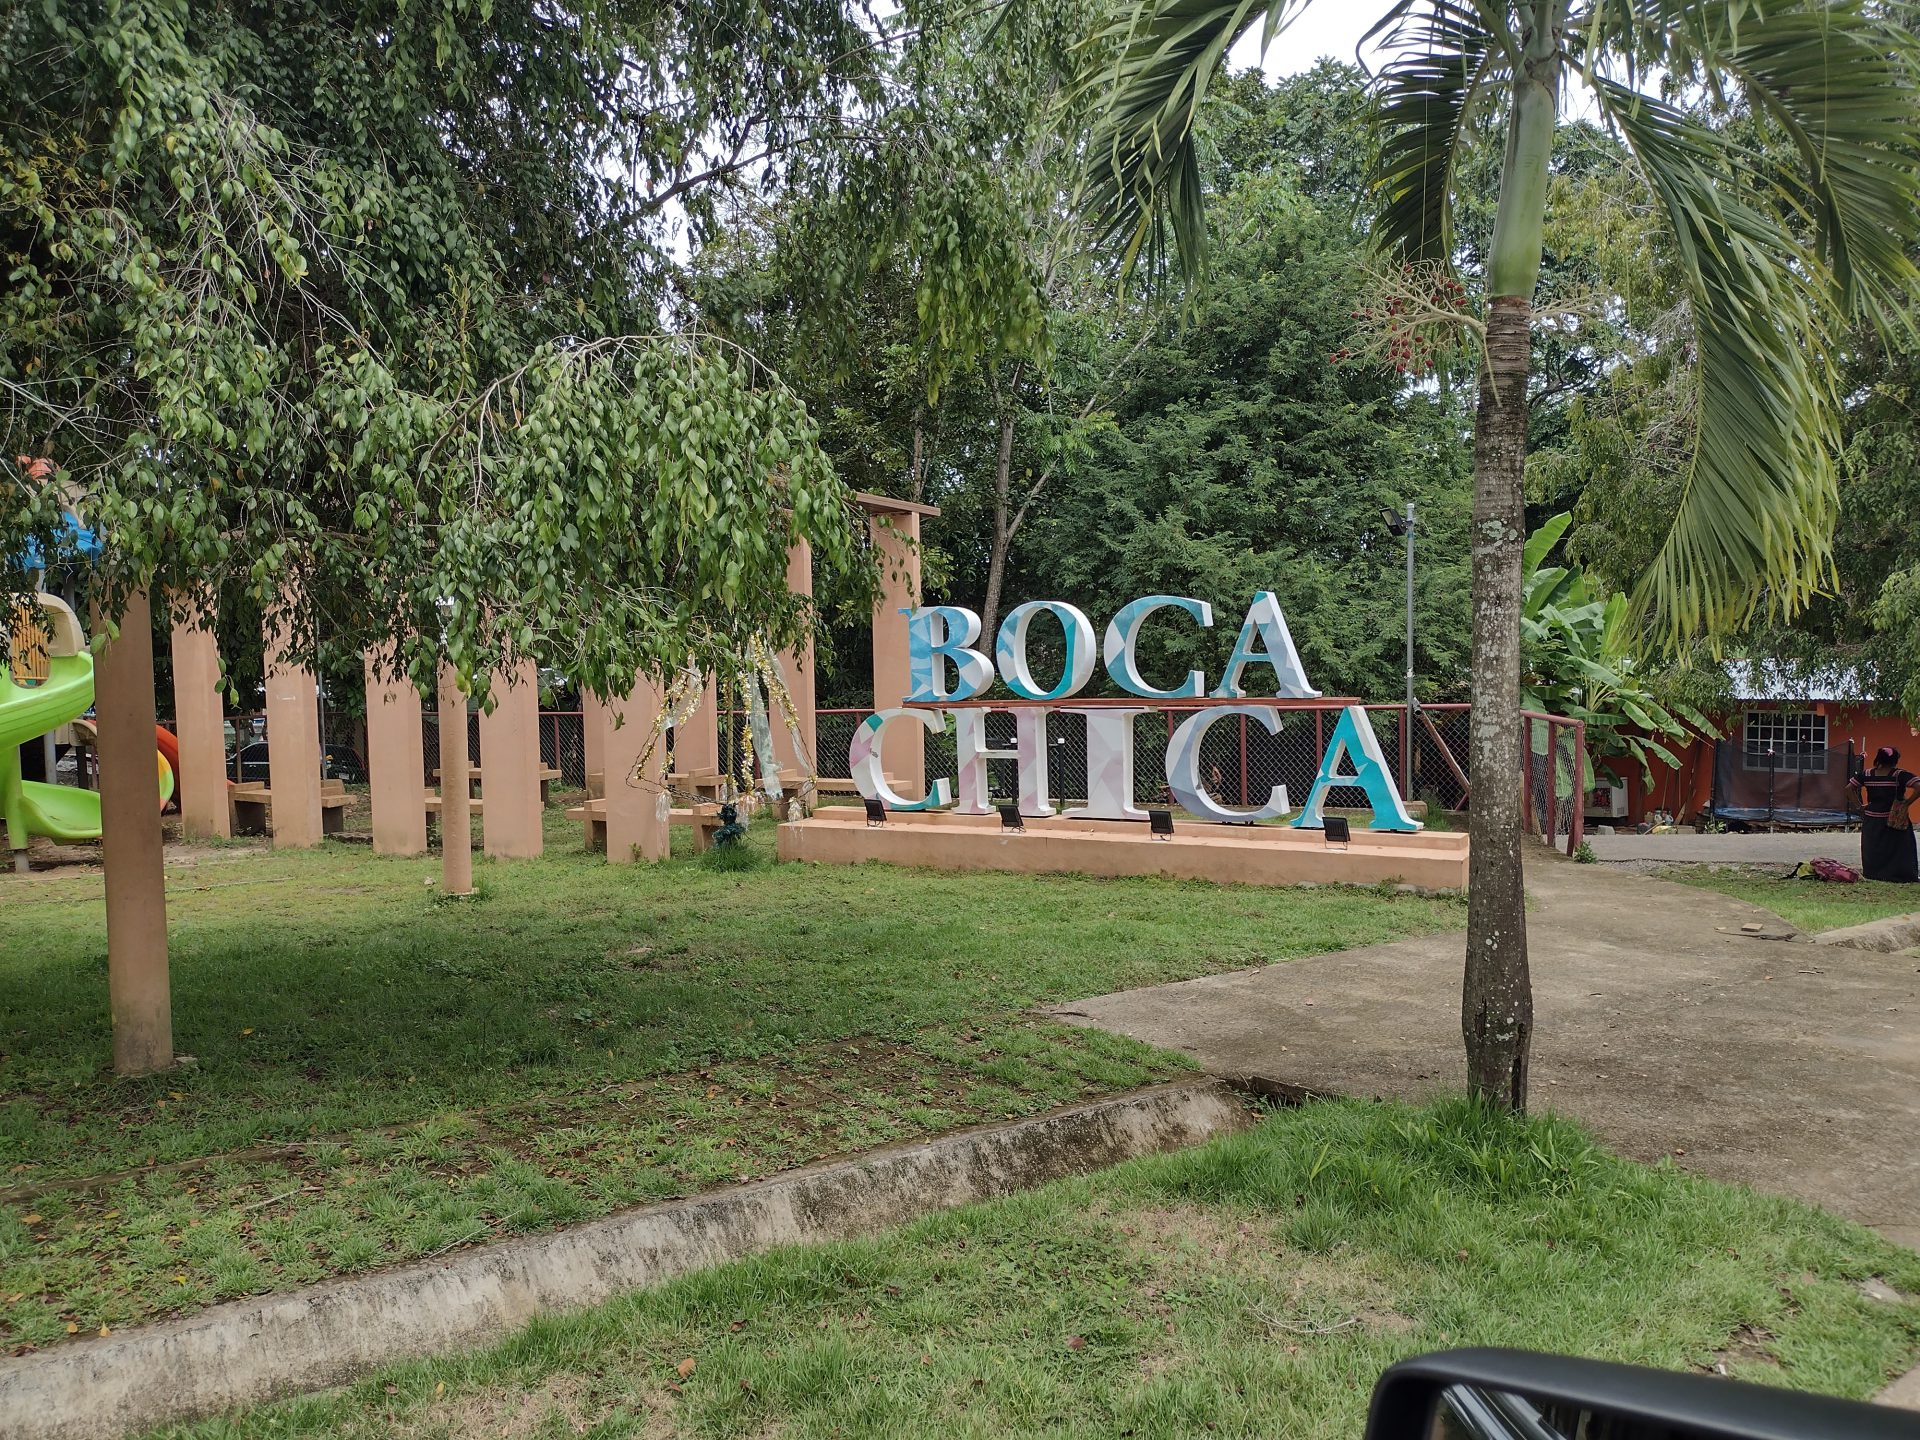 Boca Chica sign